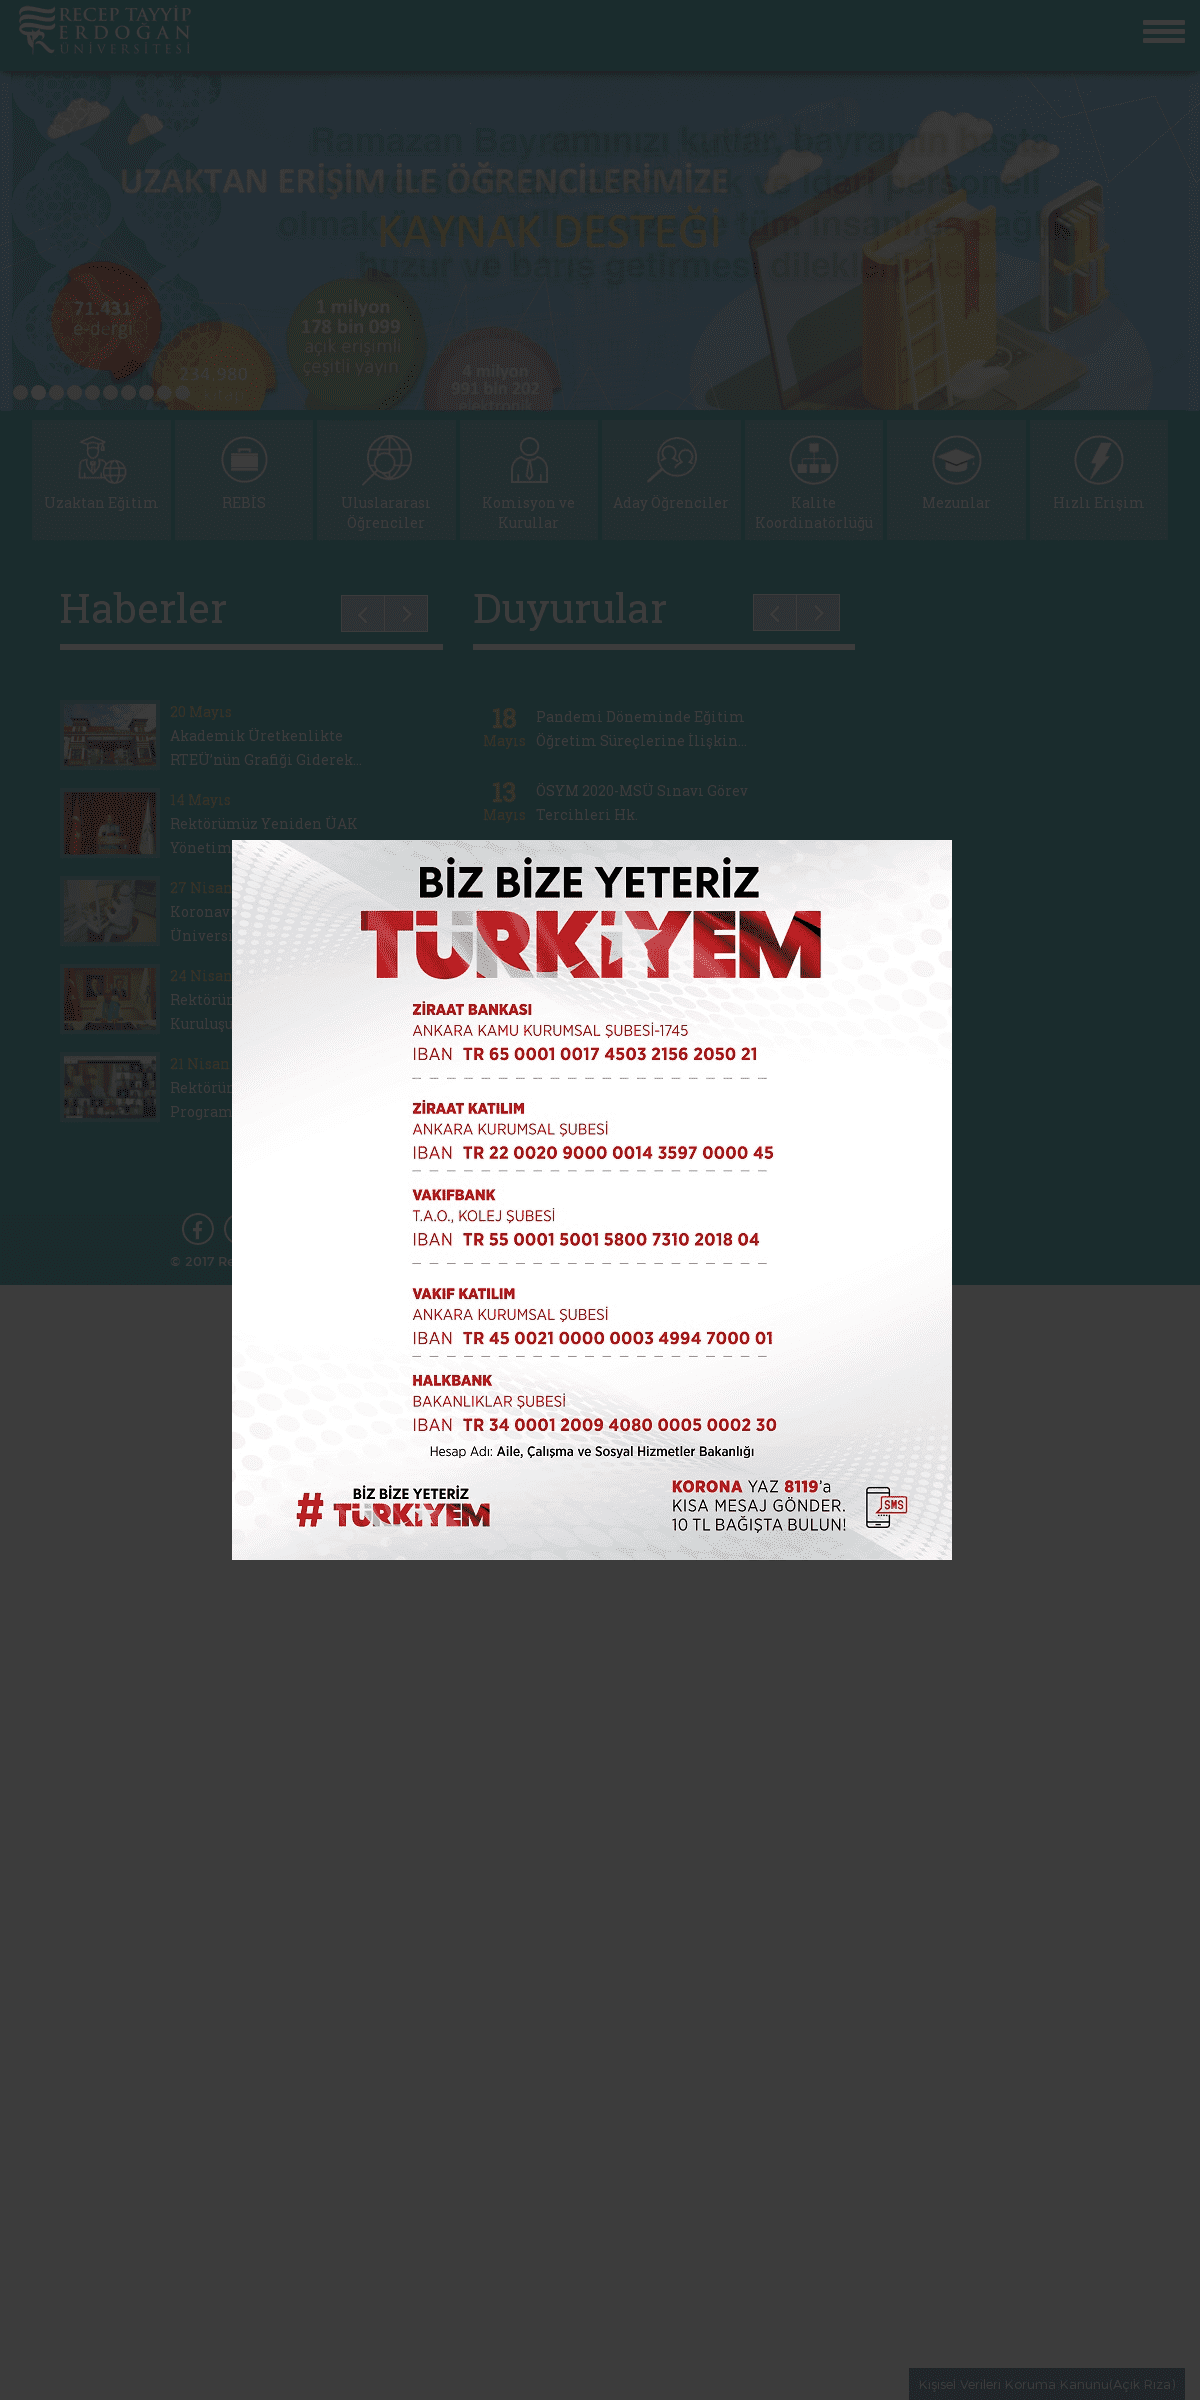 A complete backup of erdogan.edu.tr